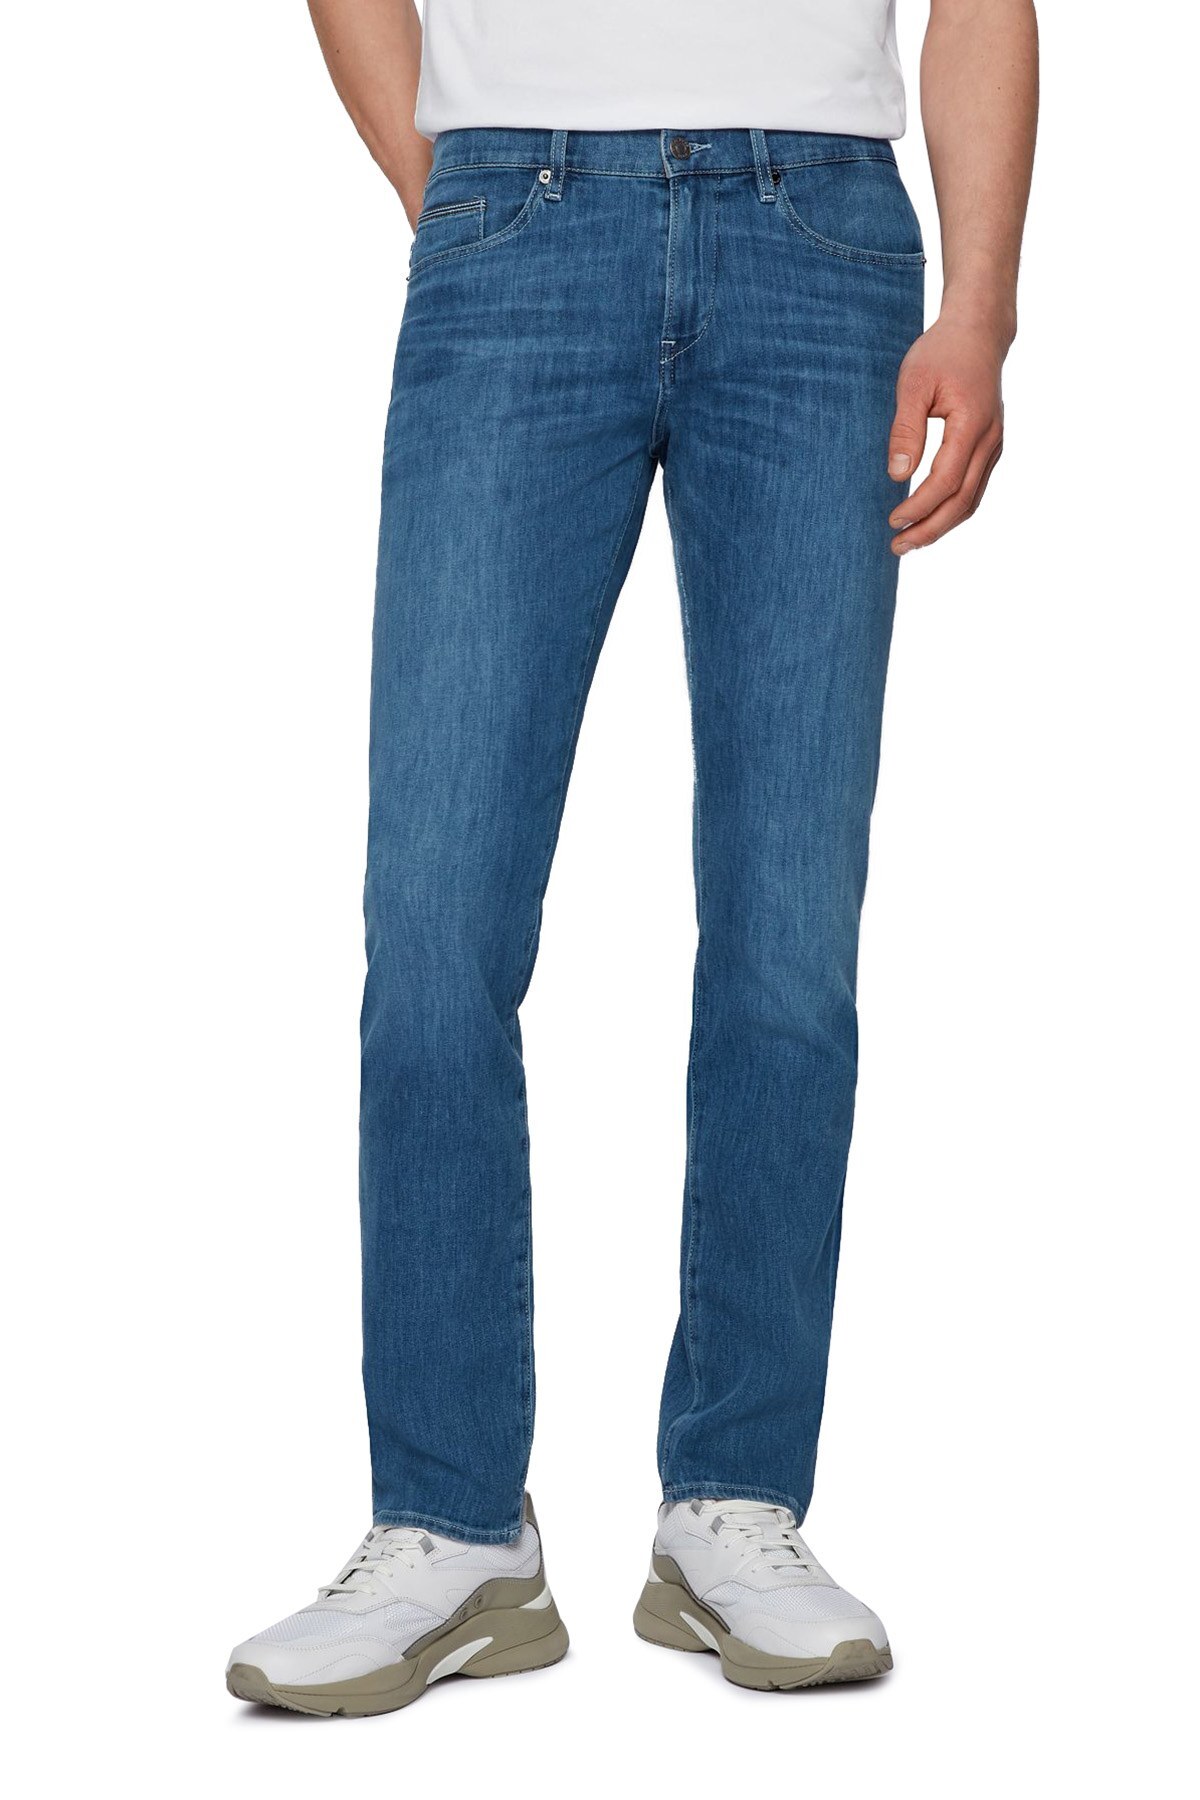 Hugo Boss Pamuklu Slim Fit Jeans Erkek Kot Pantolon 50449703 436 LACİVERT